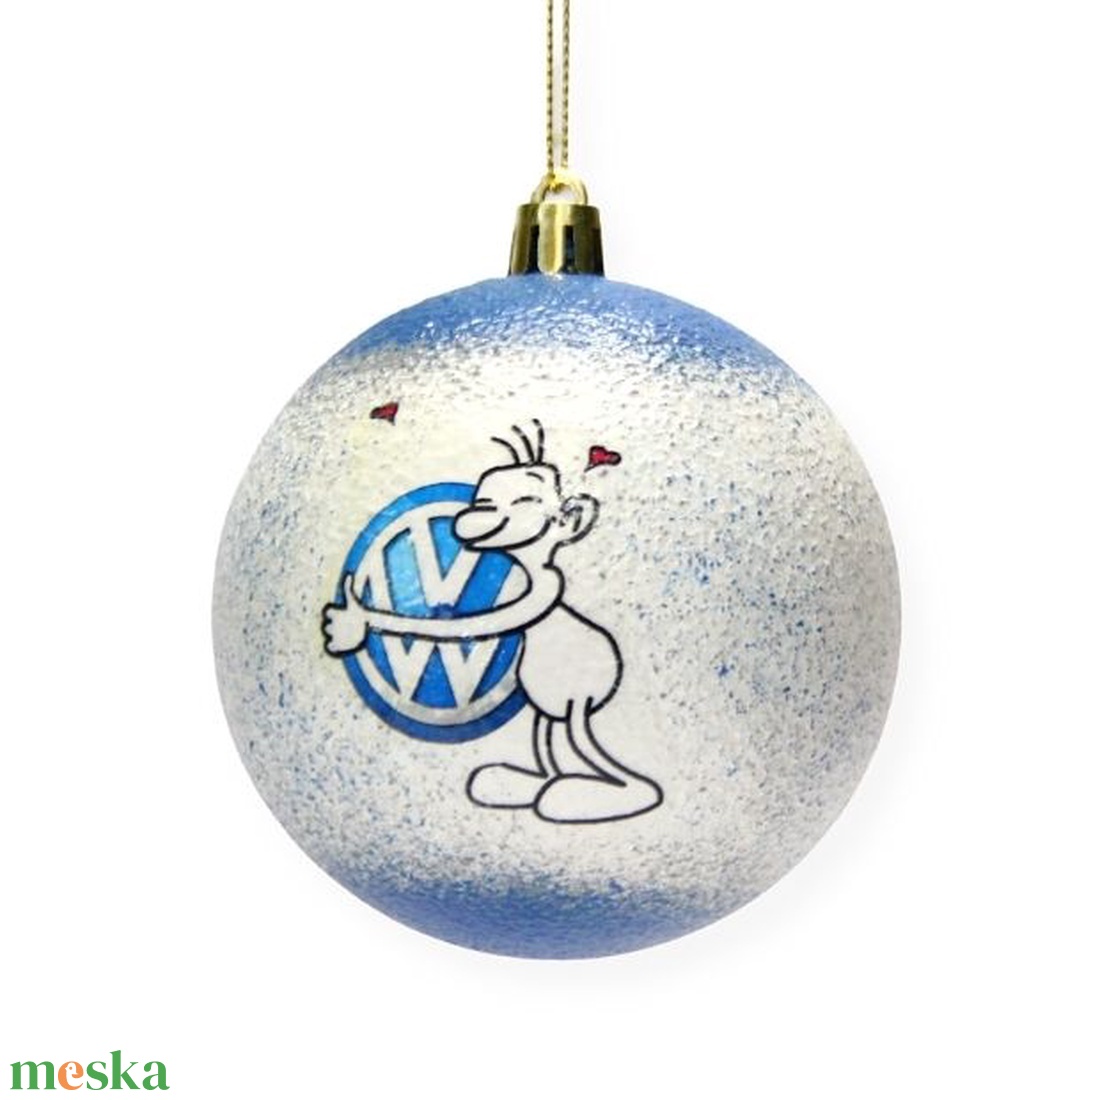 Karácsonyfa gömb autó témájú emblémával - VOLKSWAGEN rajongóknak -  párodnak; szerelmednek  mikulásra és karácsonyra  - karácsony - karácsonyi lakásdekoráció - karácsonyfadíszek - Meska.hu